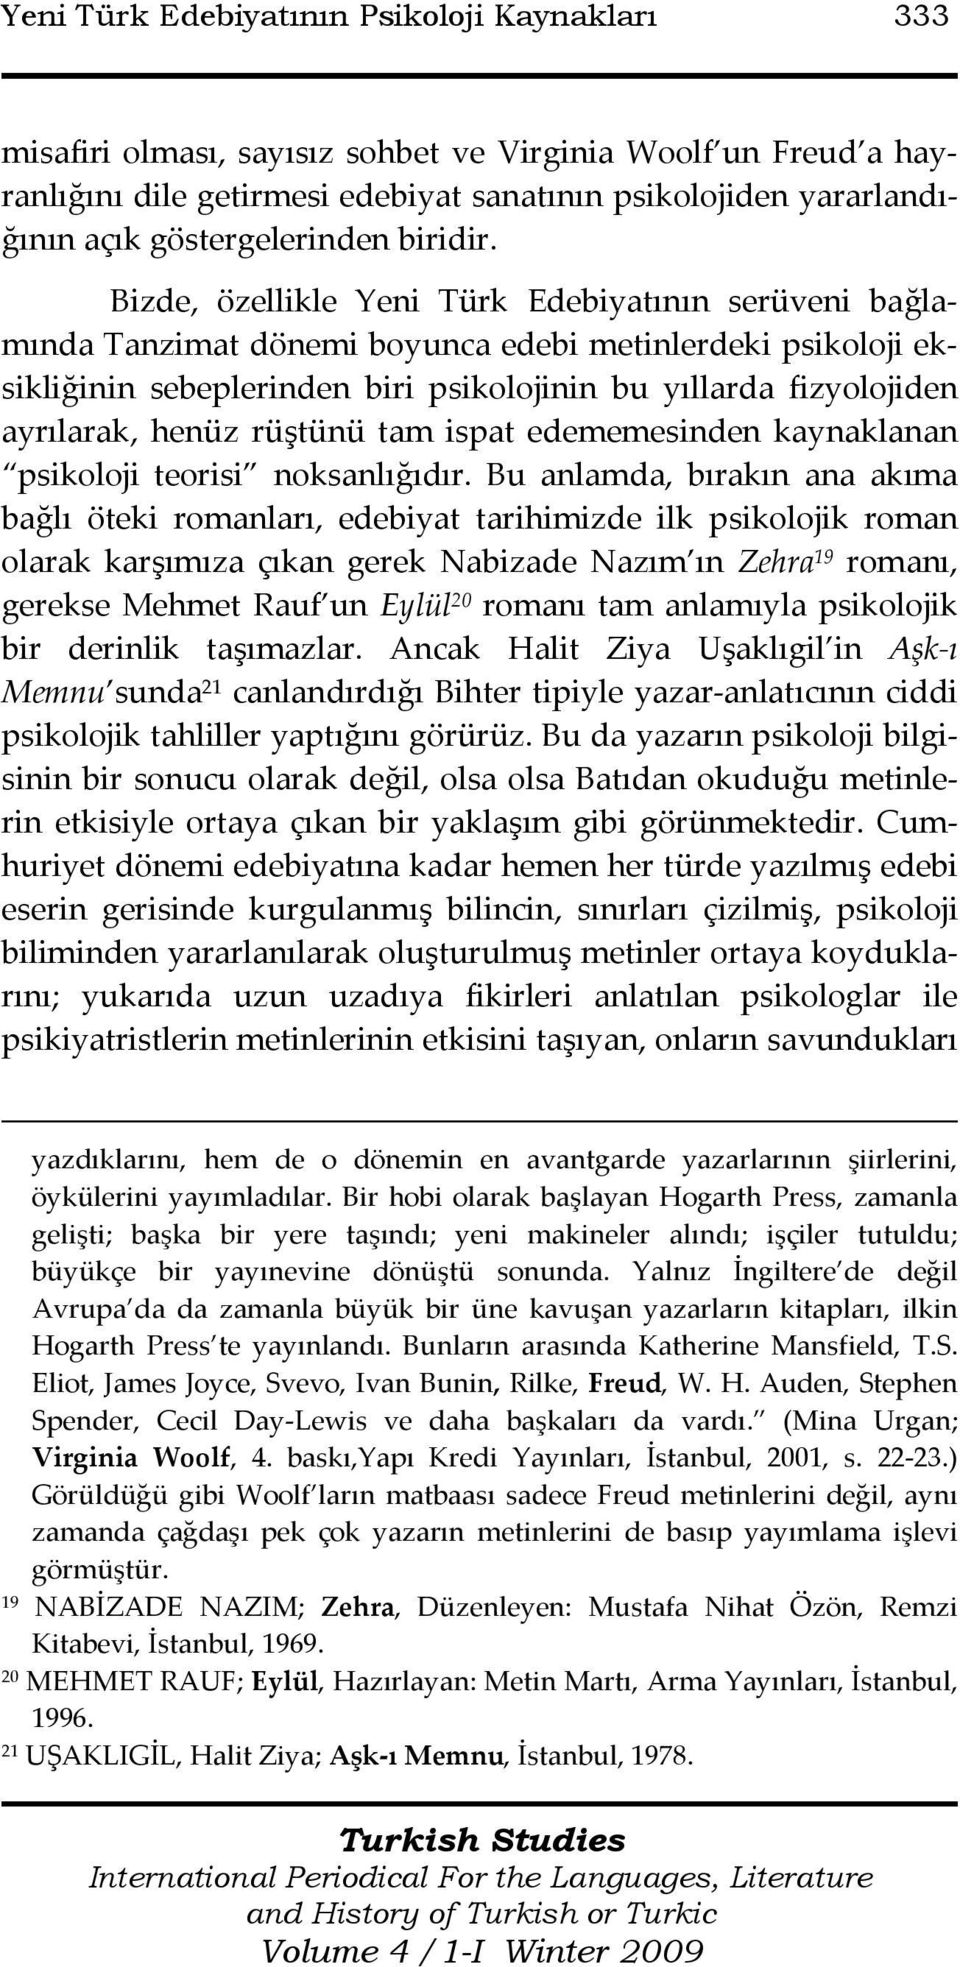 Bizde, özellikle Yeni Türk Edebiyatının serüveni bağlamında Tanzimat dönemi boyunca edebi metinlerdeki psikoloji eksikliğinin sebeplerinden biri psikolojinin bu yıllarda fizyolojiden ayrılarak, henüz